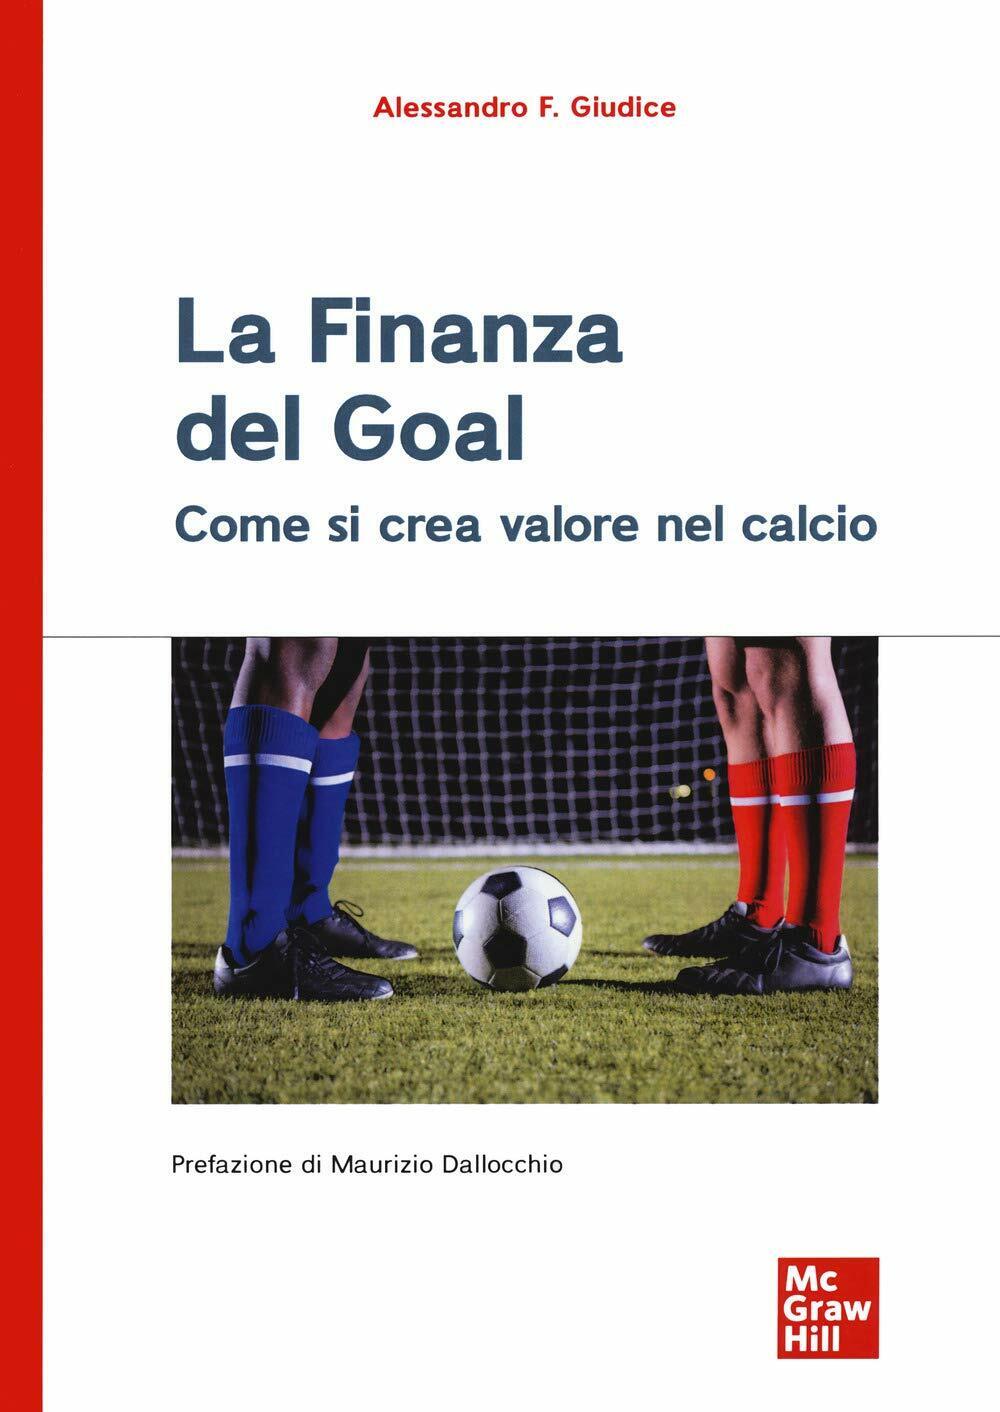 La finanza del goal - Alessandro F. Giudice - McGraw-Hill Education, 2020 libro usato